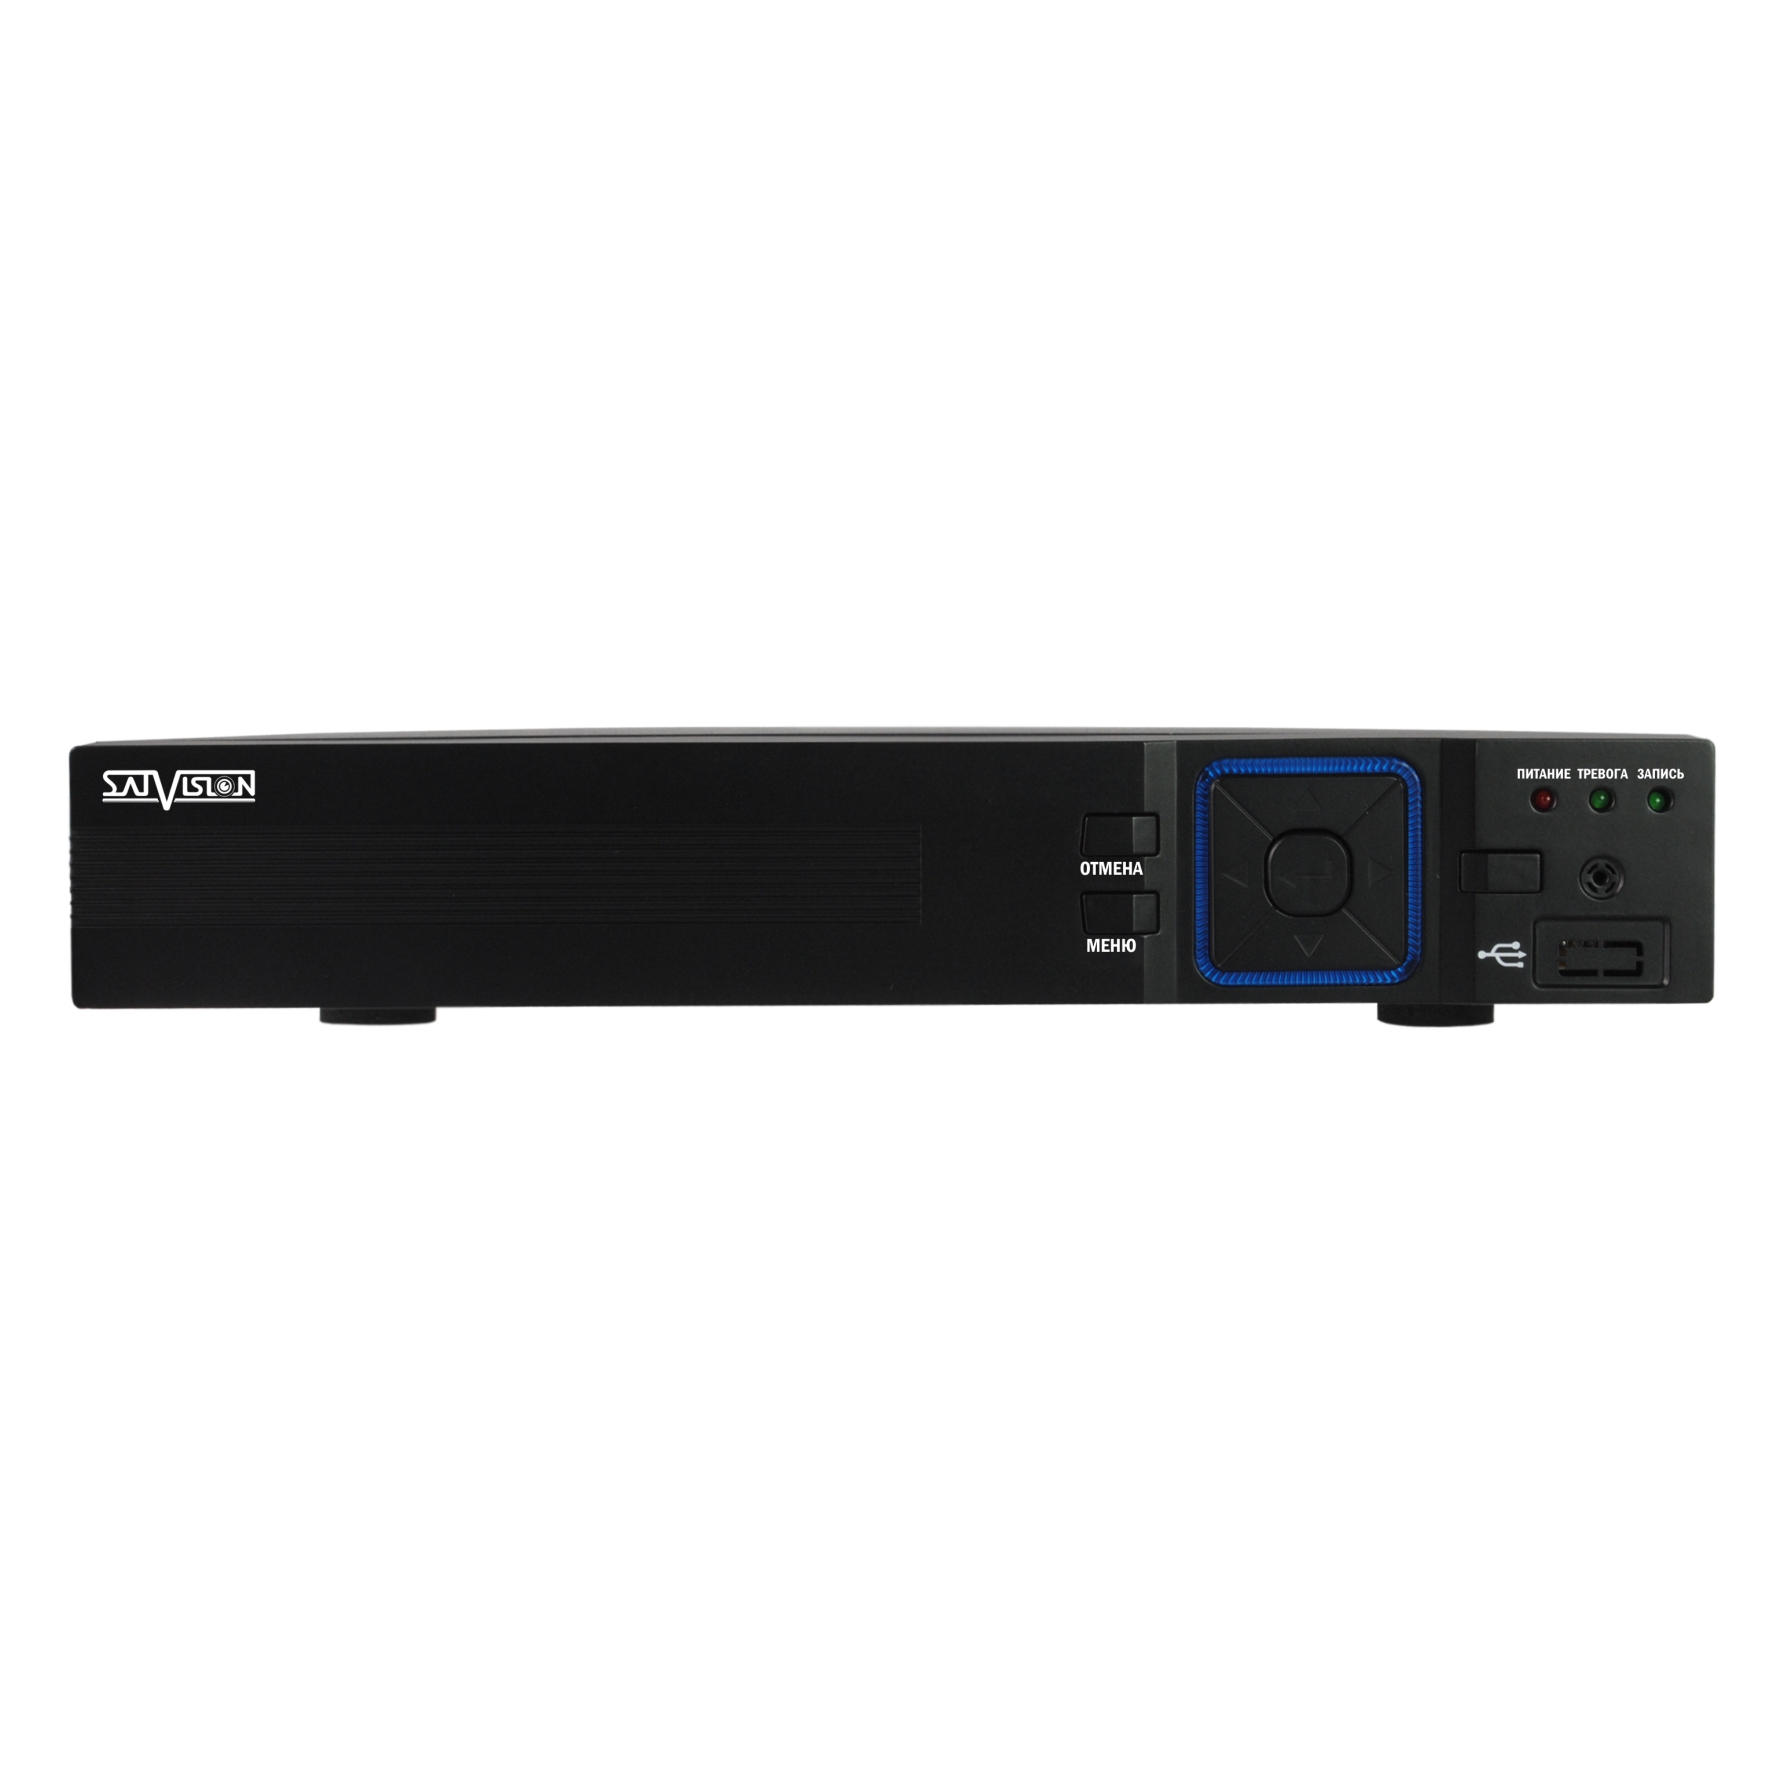 4х канальный цифровой гибридный видеорегистратор SVR-4325AH SATVISION